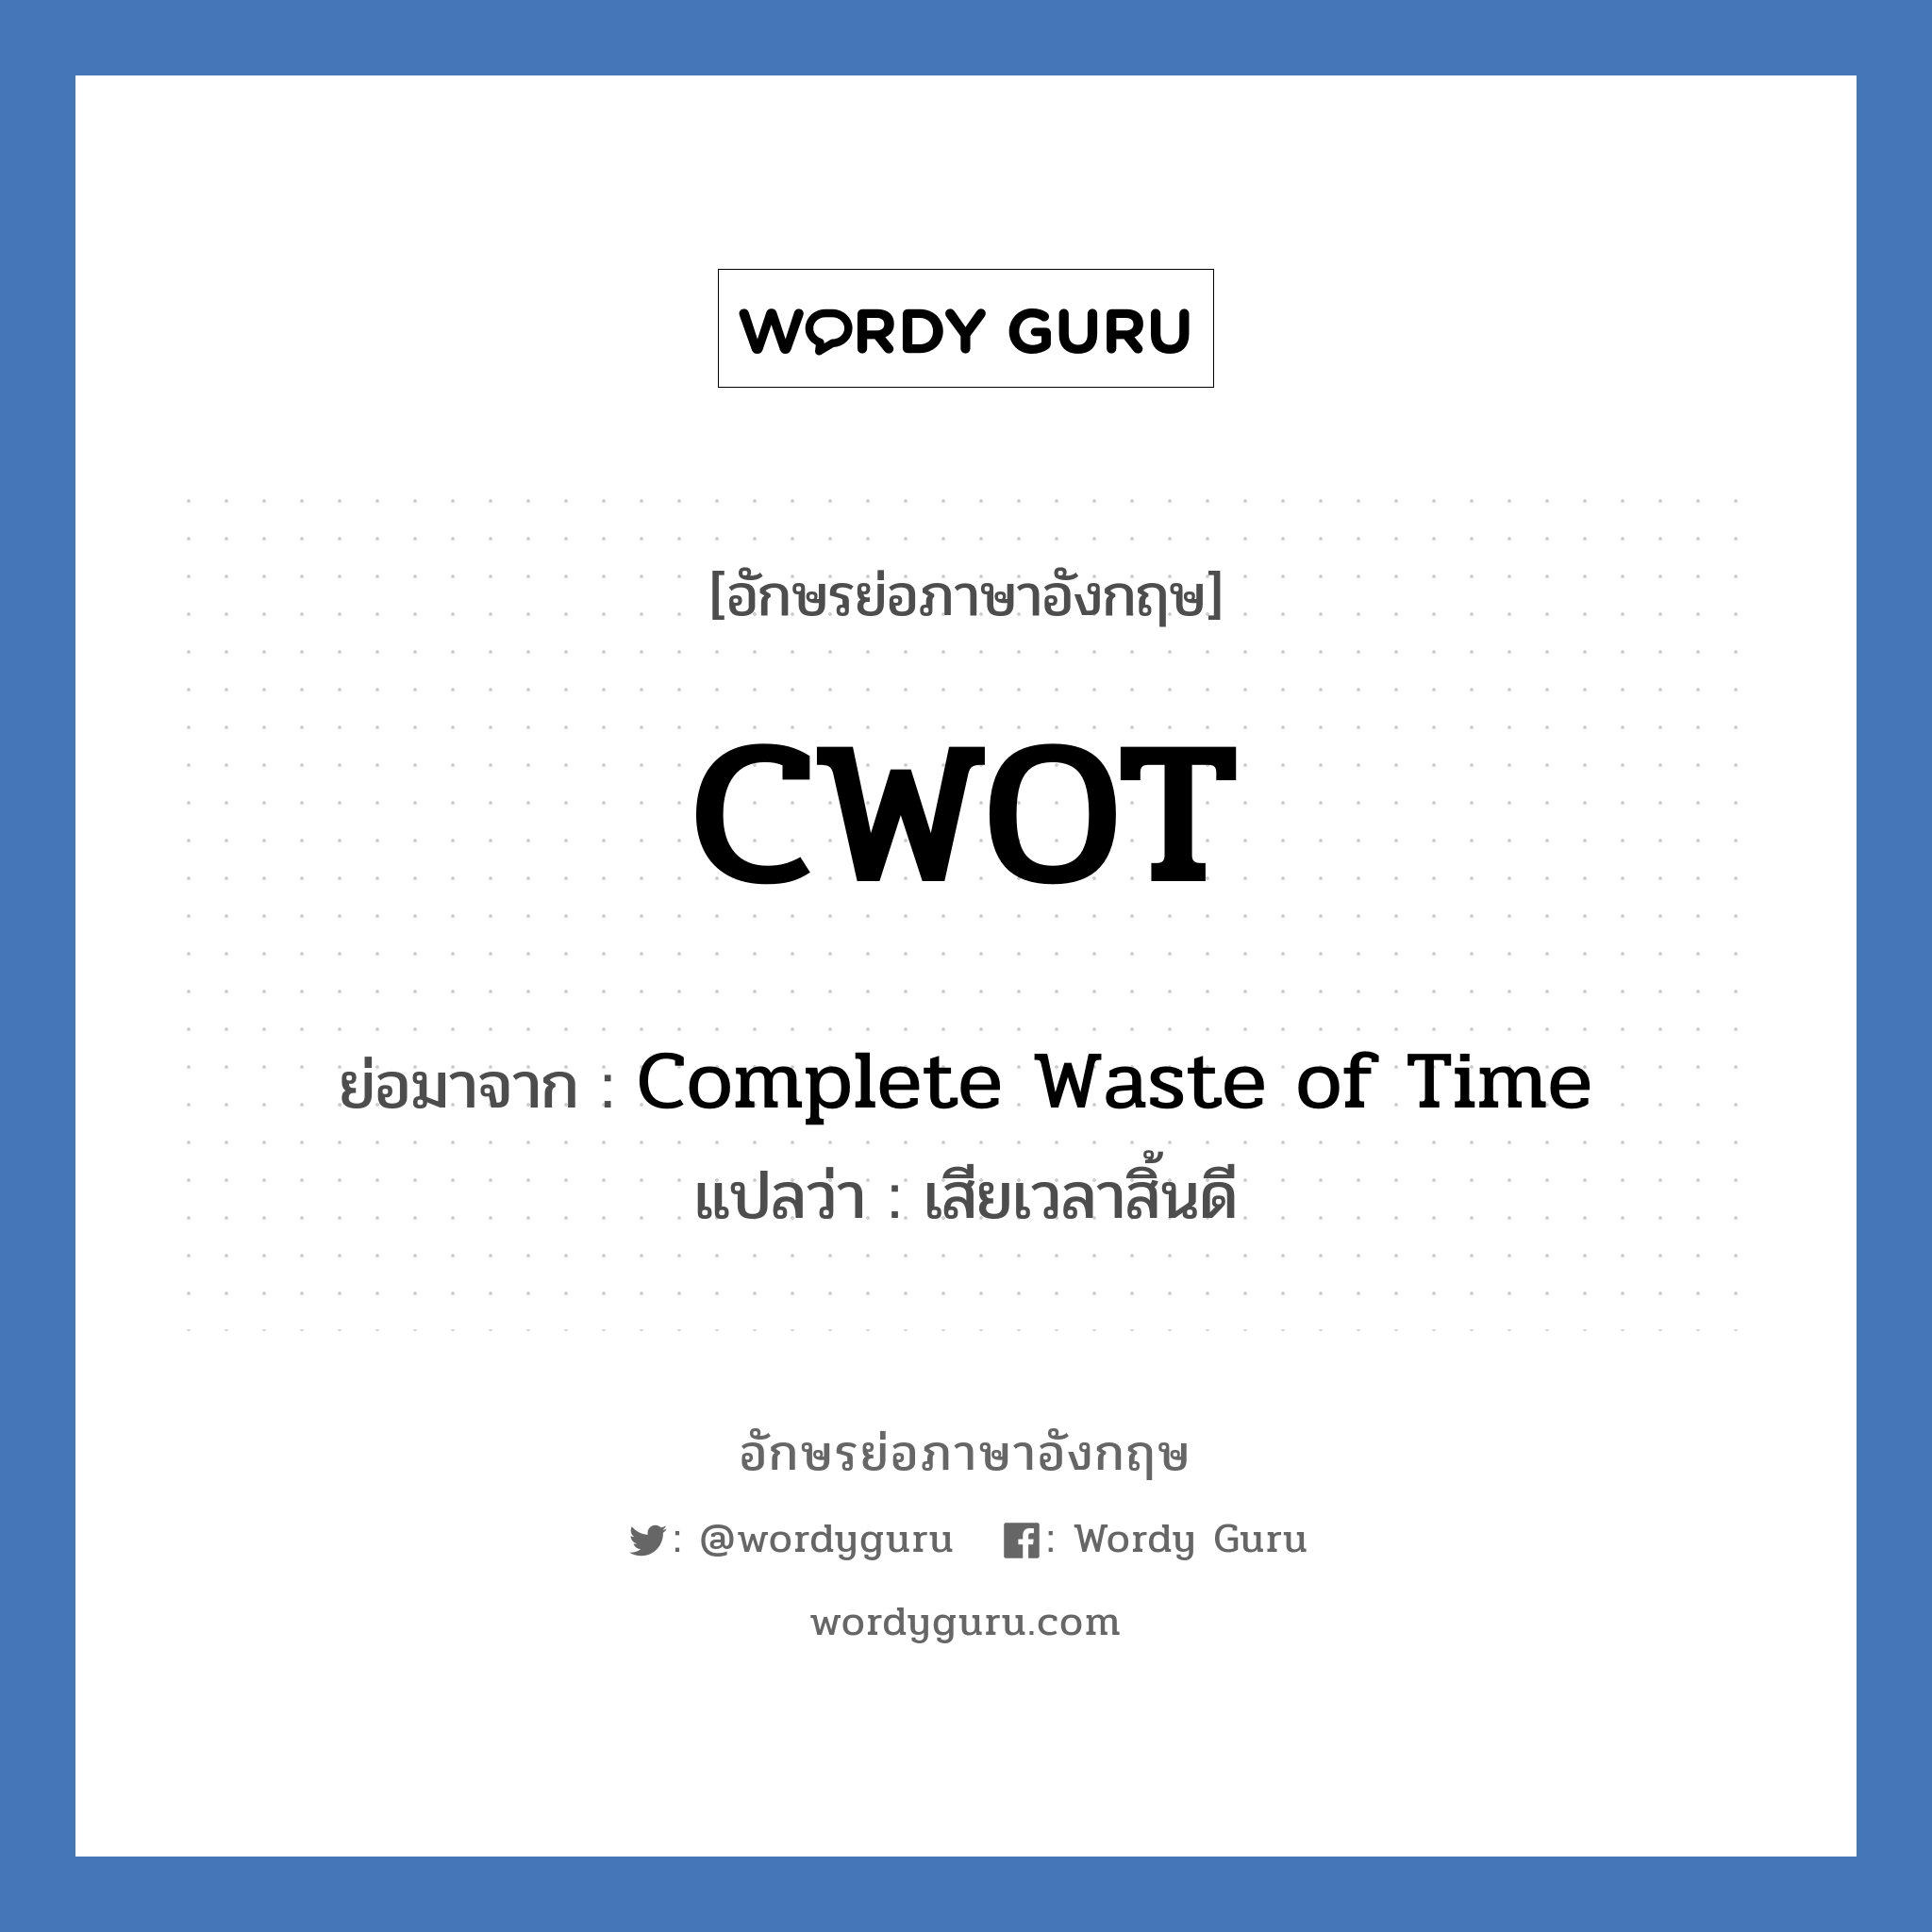 CWOT ย่อมาจาก? แปลว่า?, อักษรย่อภาษาอังกฤษ CWOT ย่อมาจาก Complete Waste of Time แปลว่า เสียเวลาสิ้นดี